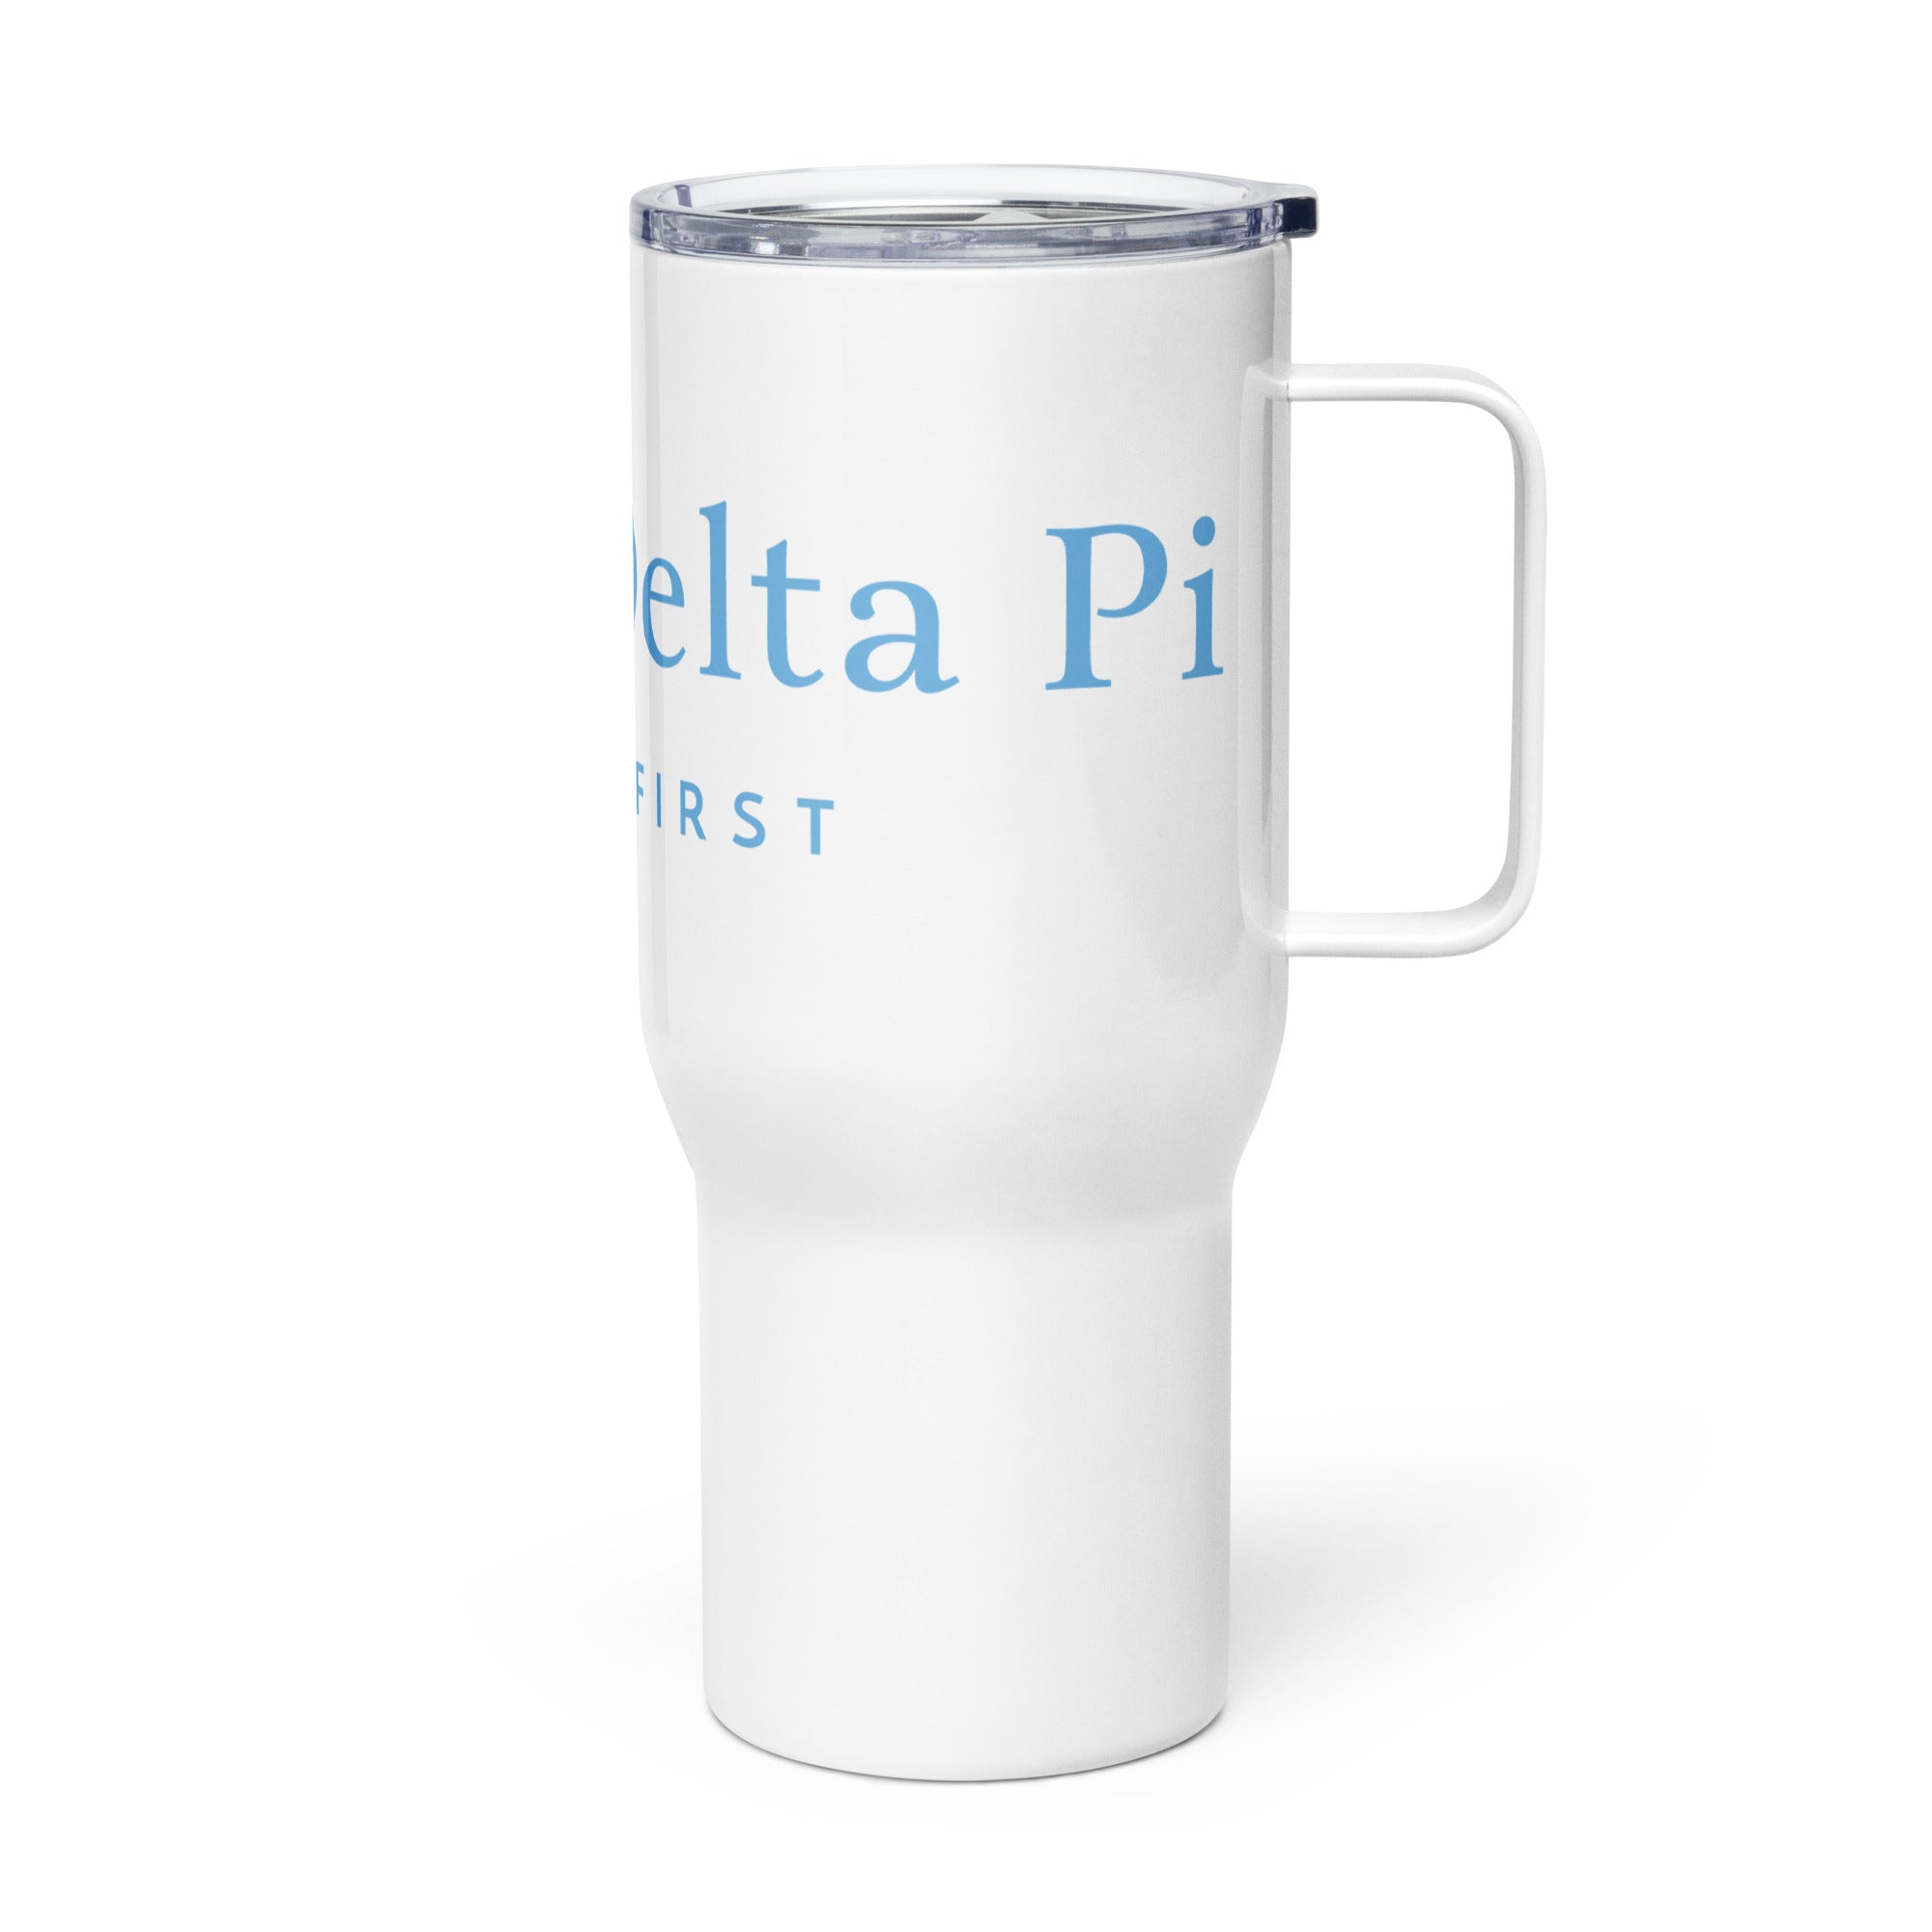 Alpha Delta Pi Travel mug with a handle